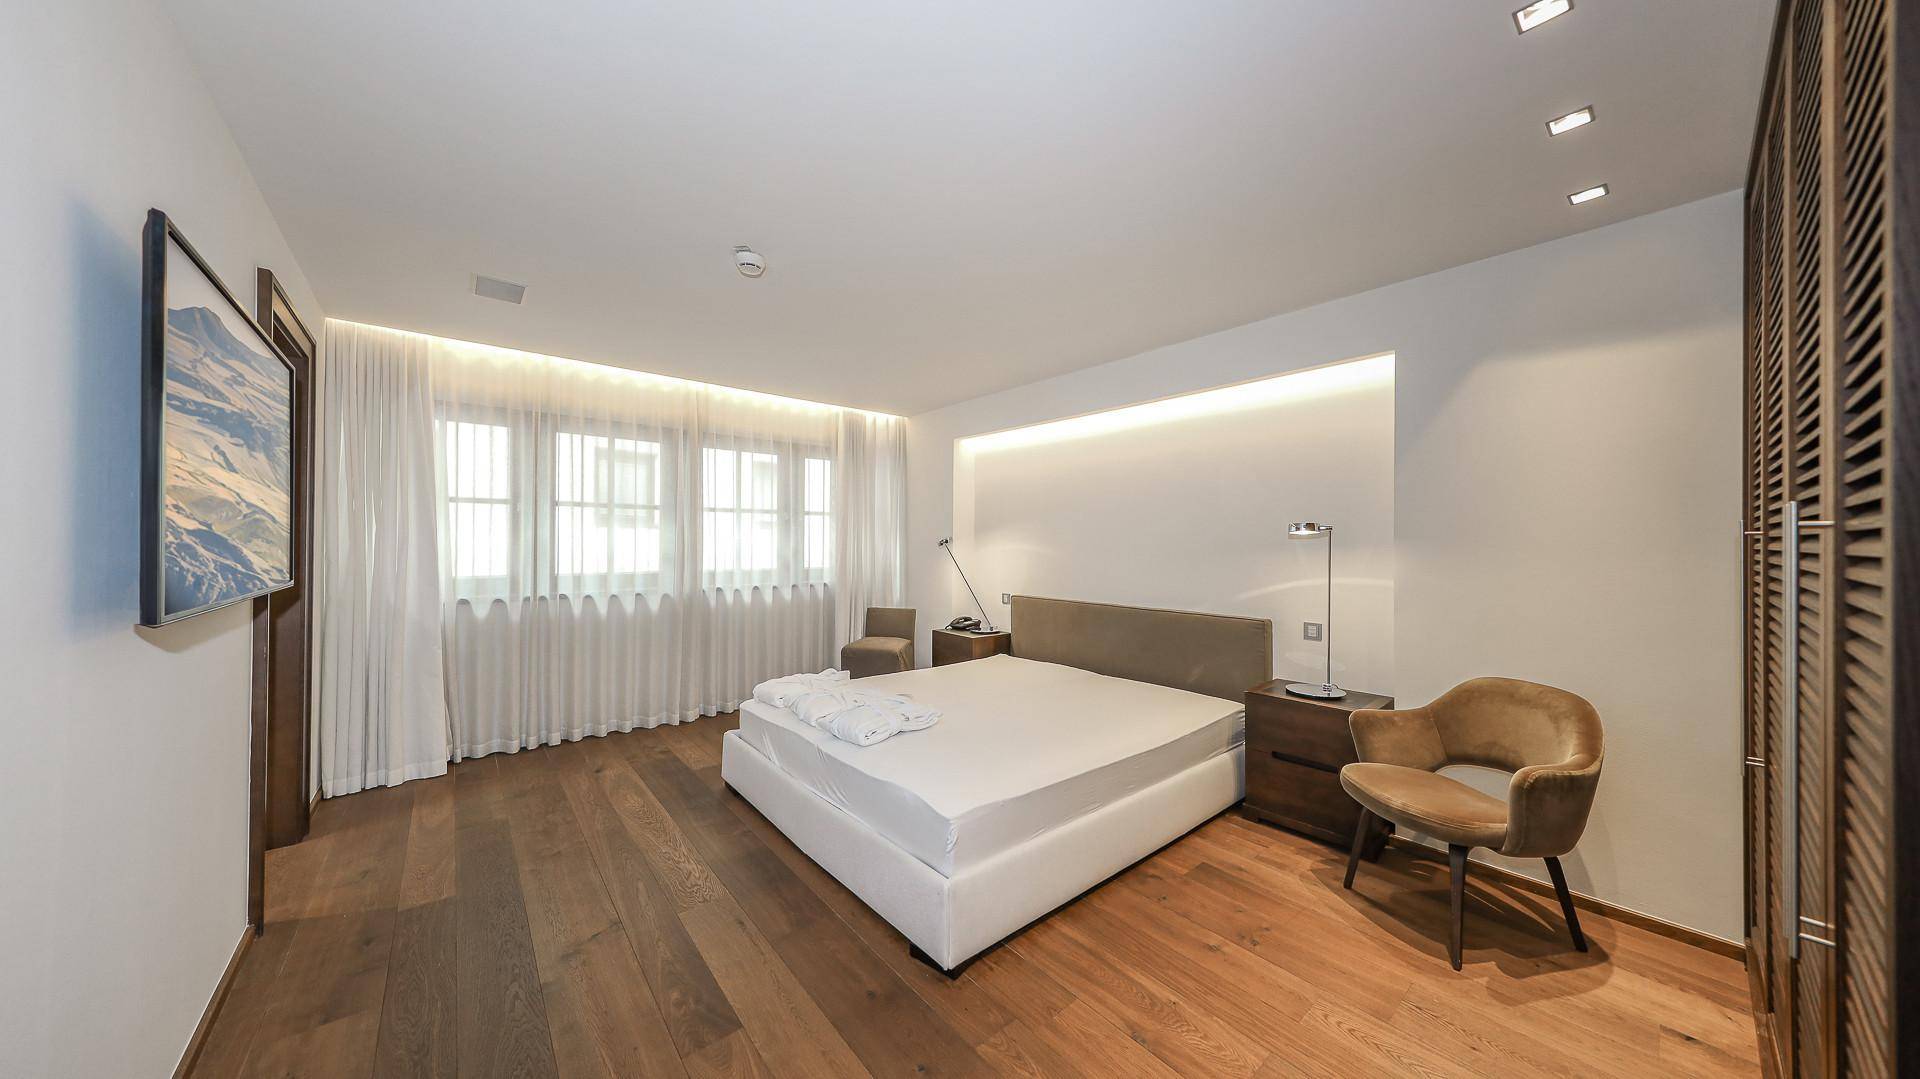 KITZIMMO-Luxus-Suite mit Zugang in ein 5-Sterne-Hotel - Immobilien Kitzbühel.